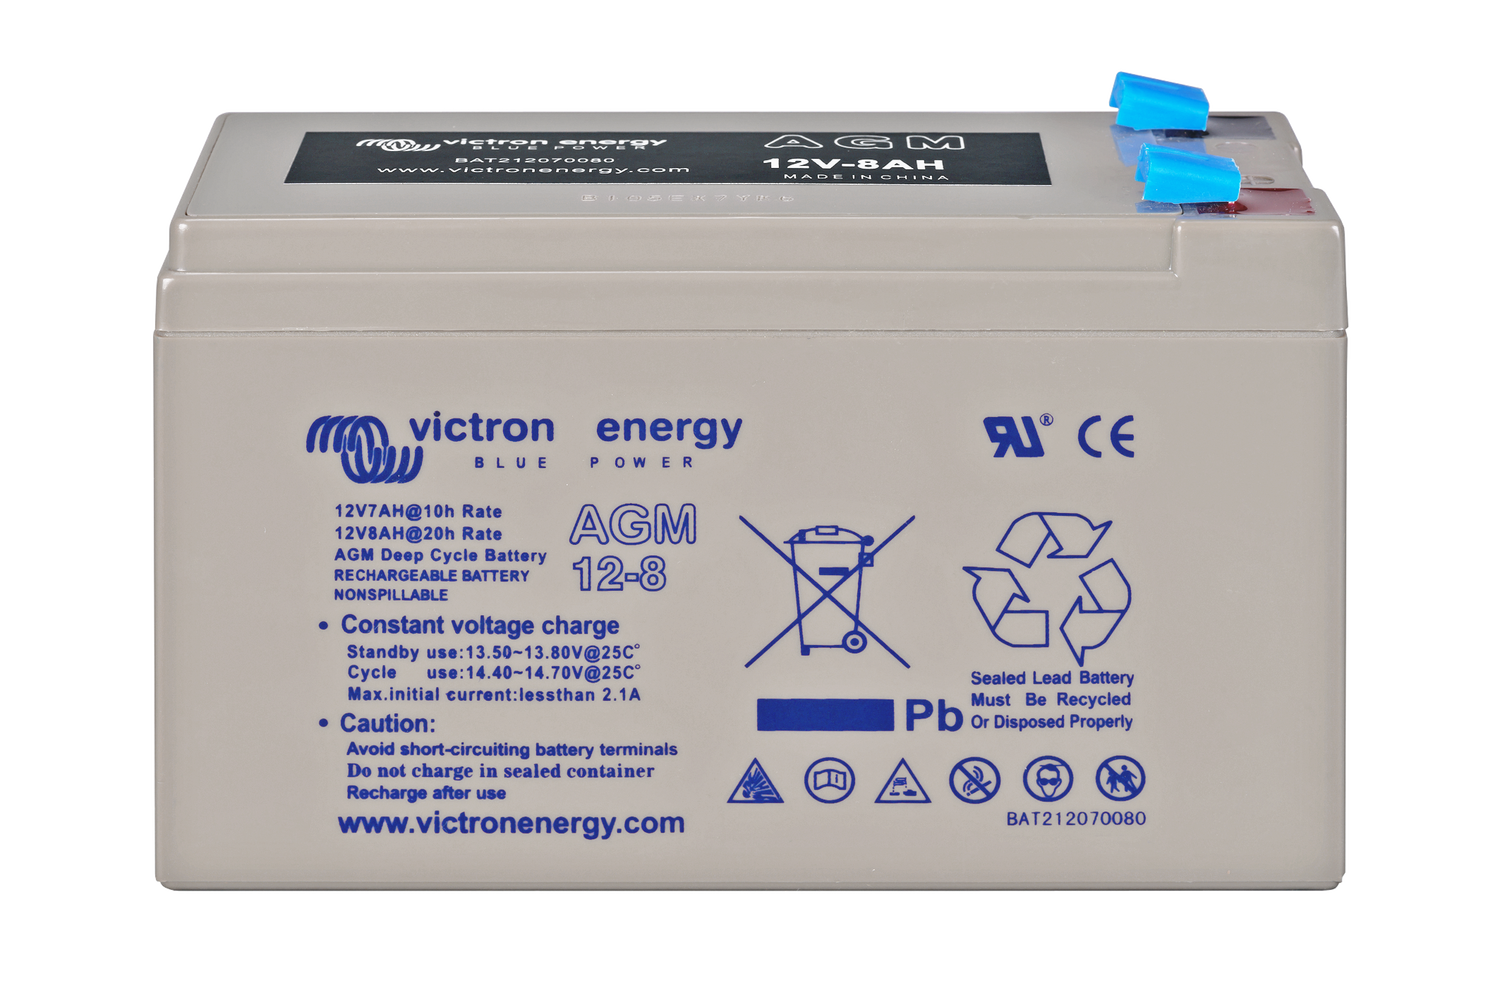 Batterie gel AGM VRLA 12V 7Ah Green Cell - Expédition immédiate